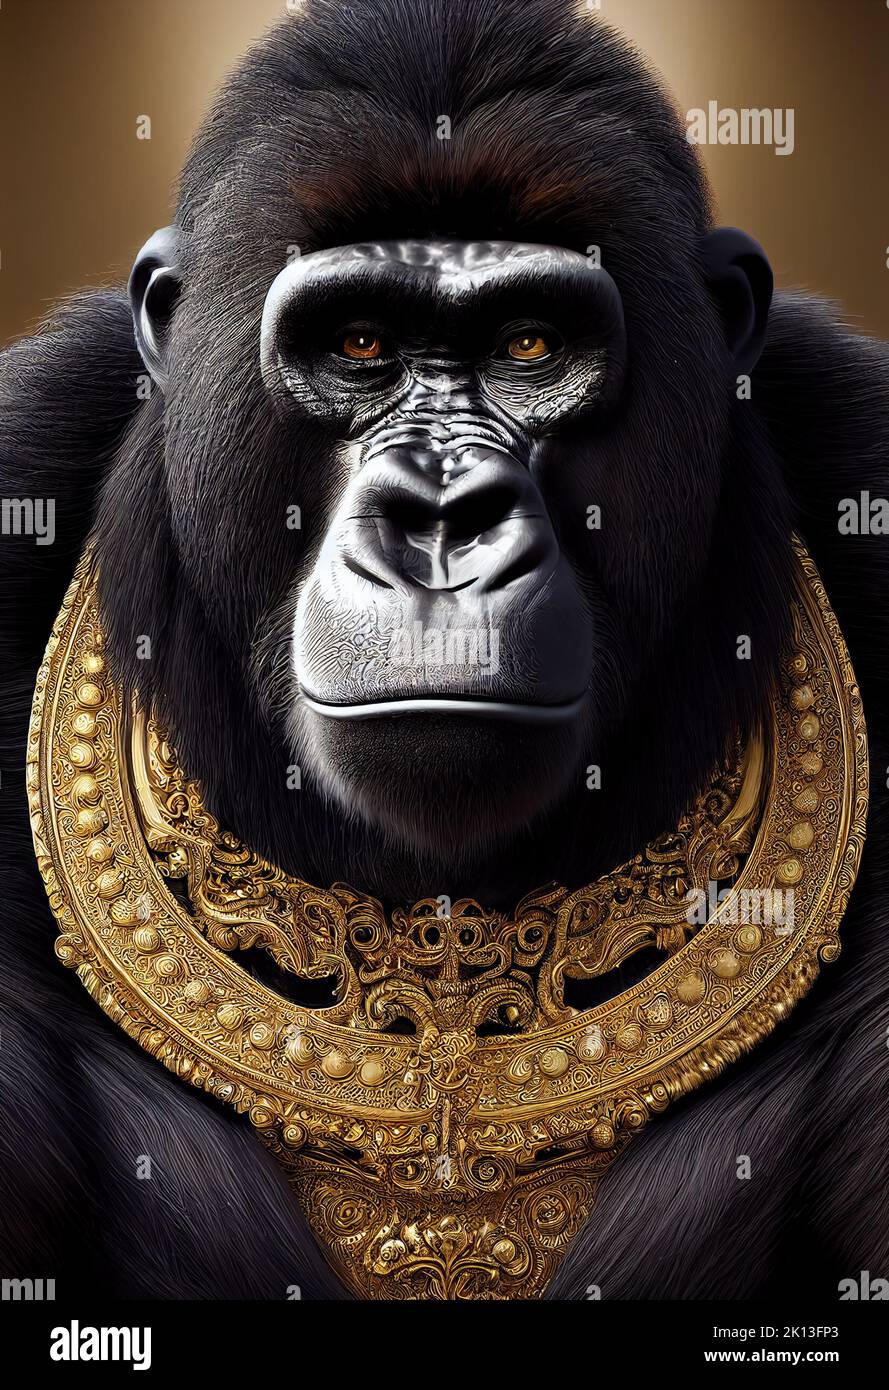 A 3D rendu Illustration d'un roi de gorille Banque D'Images